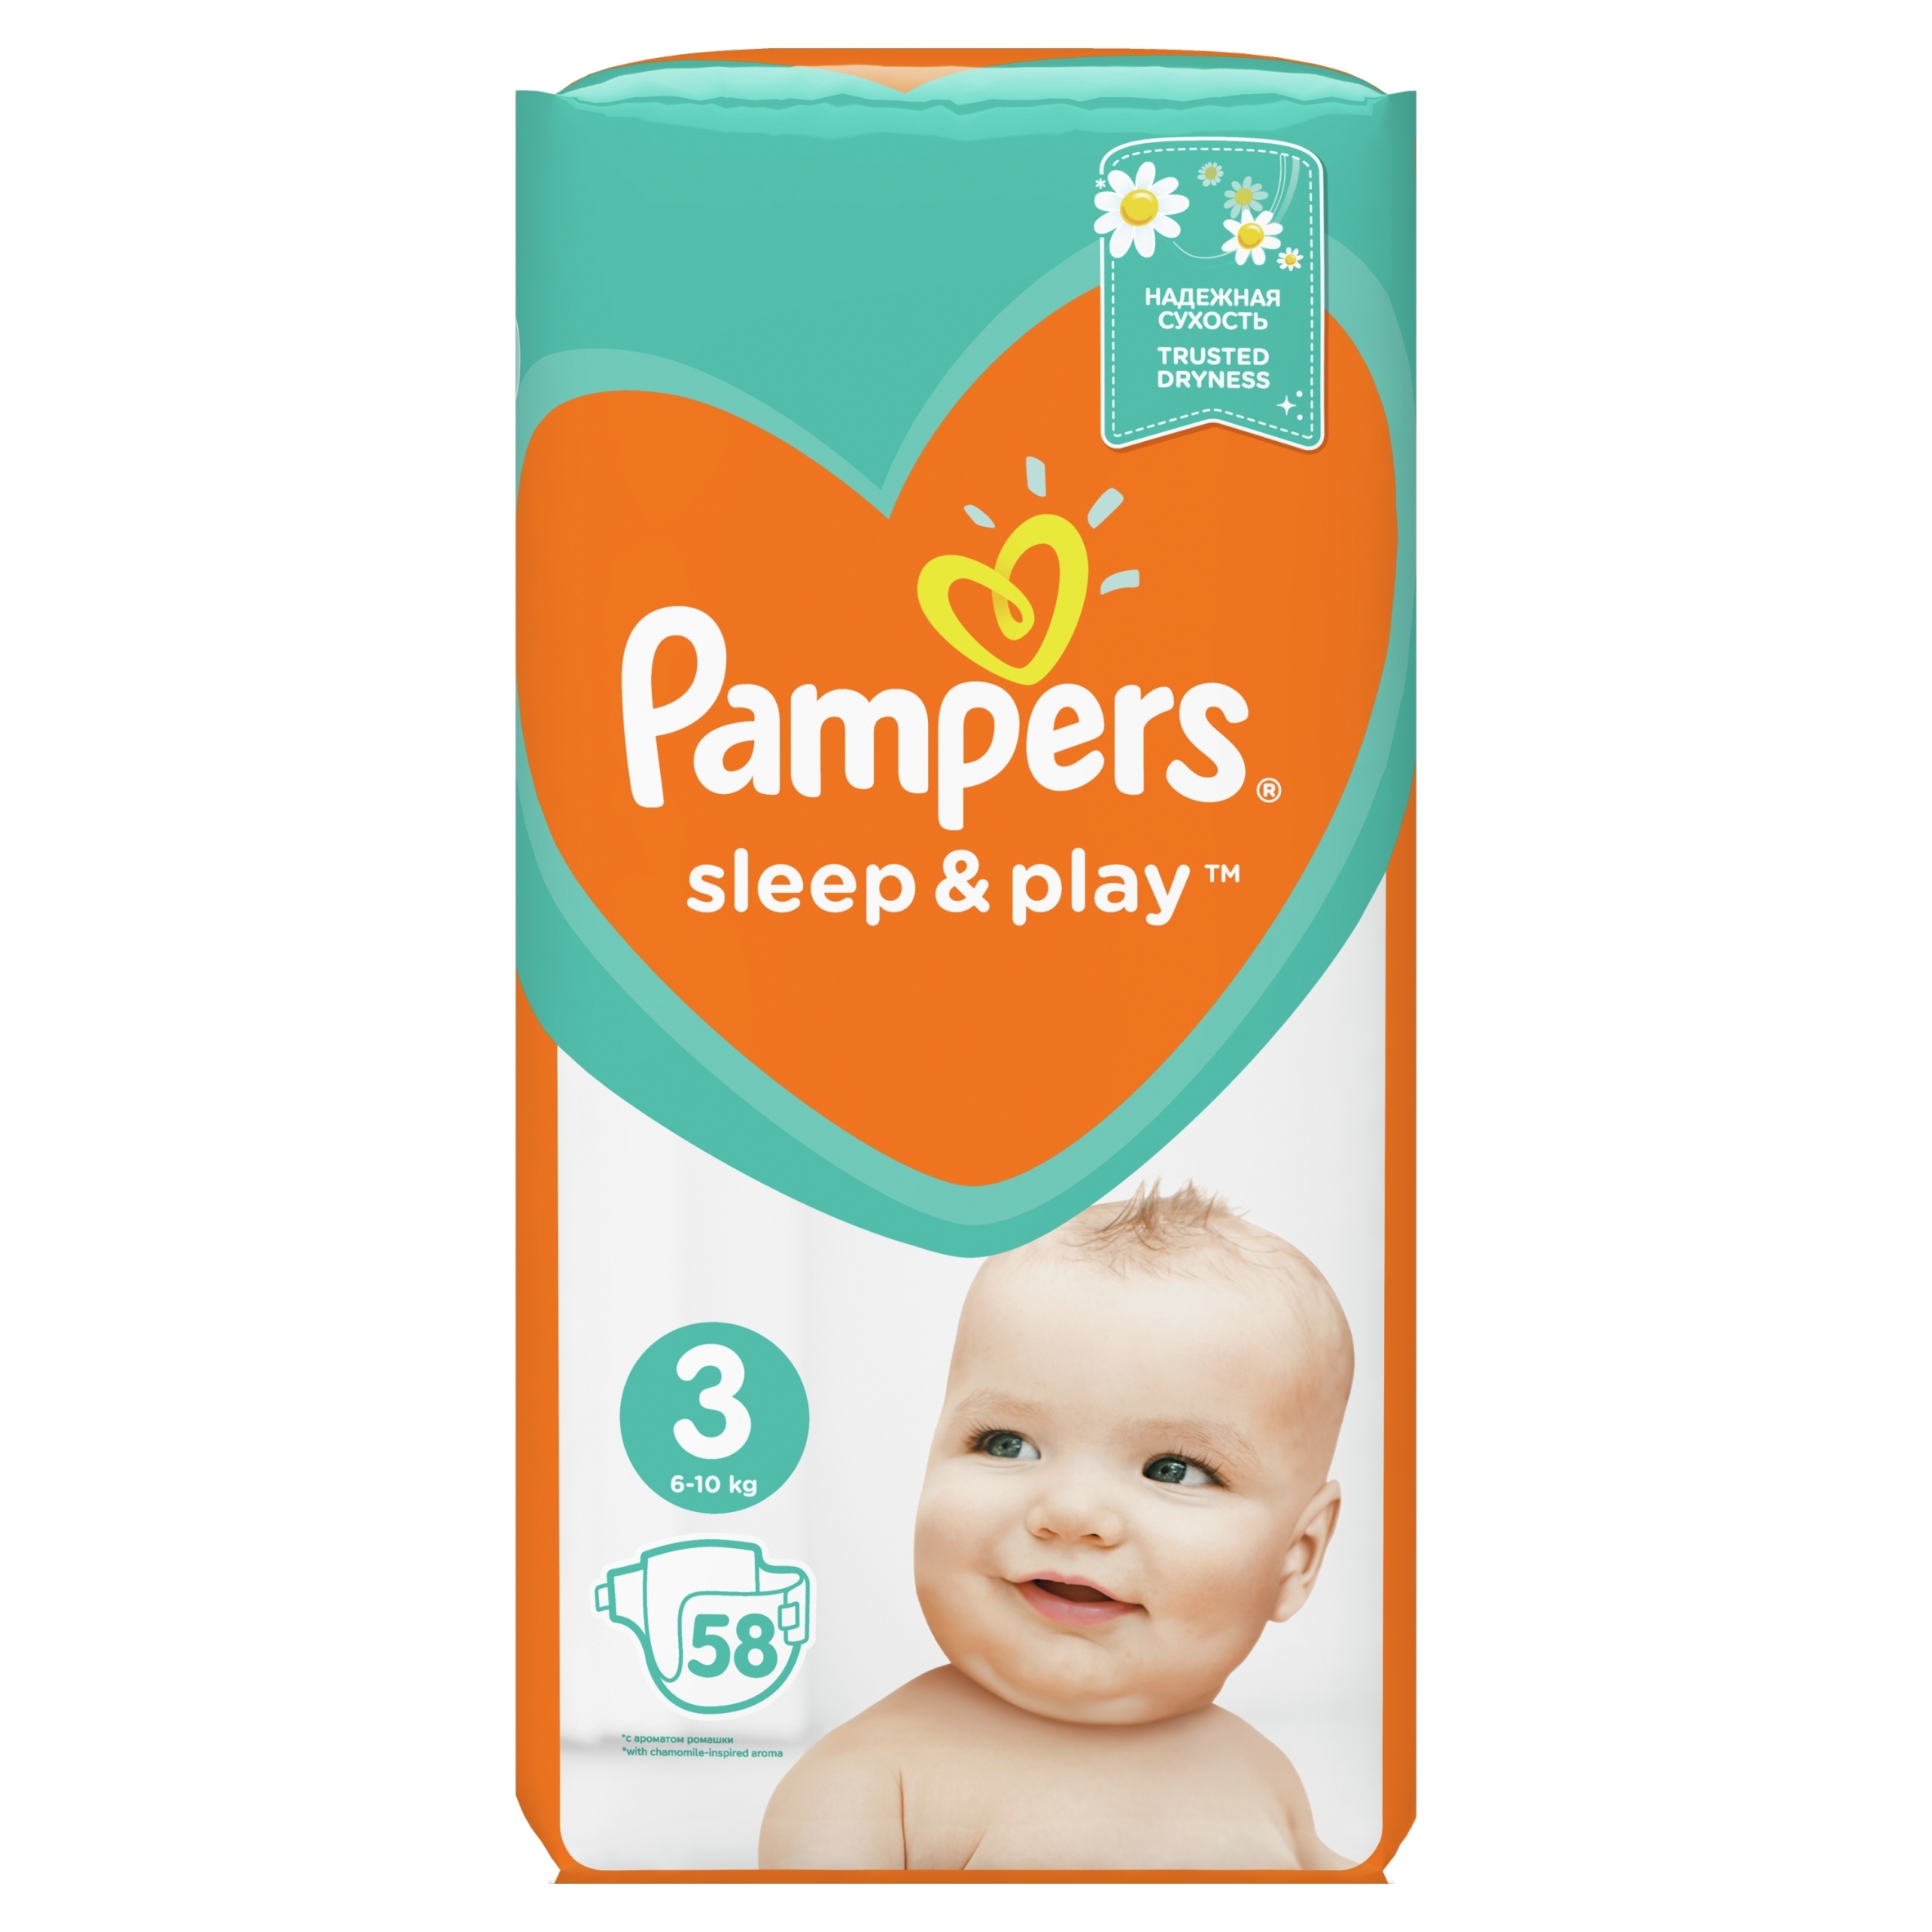 pampers sleep &play opinie